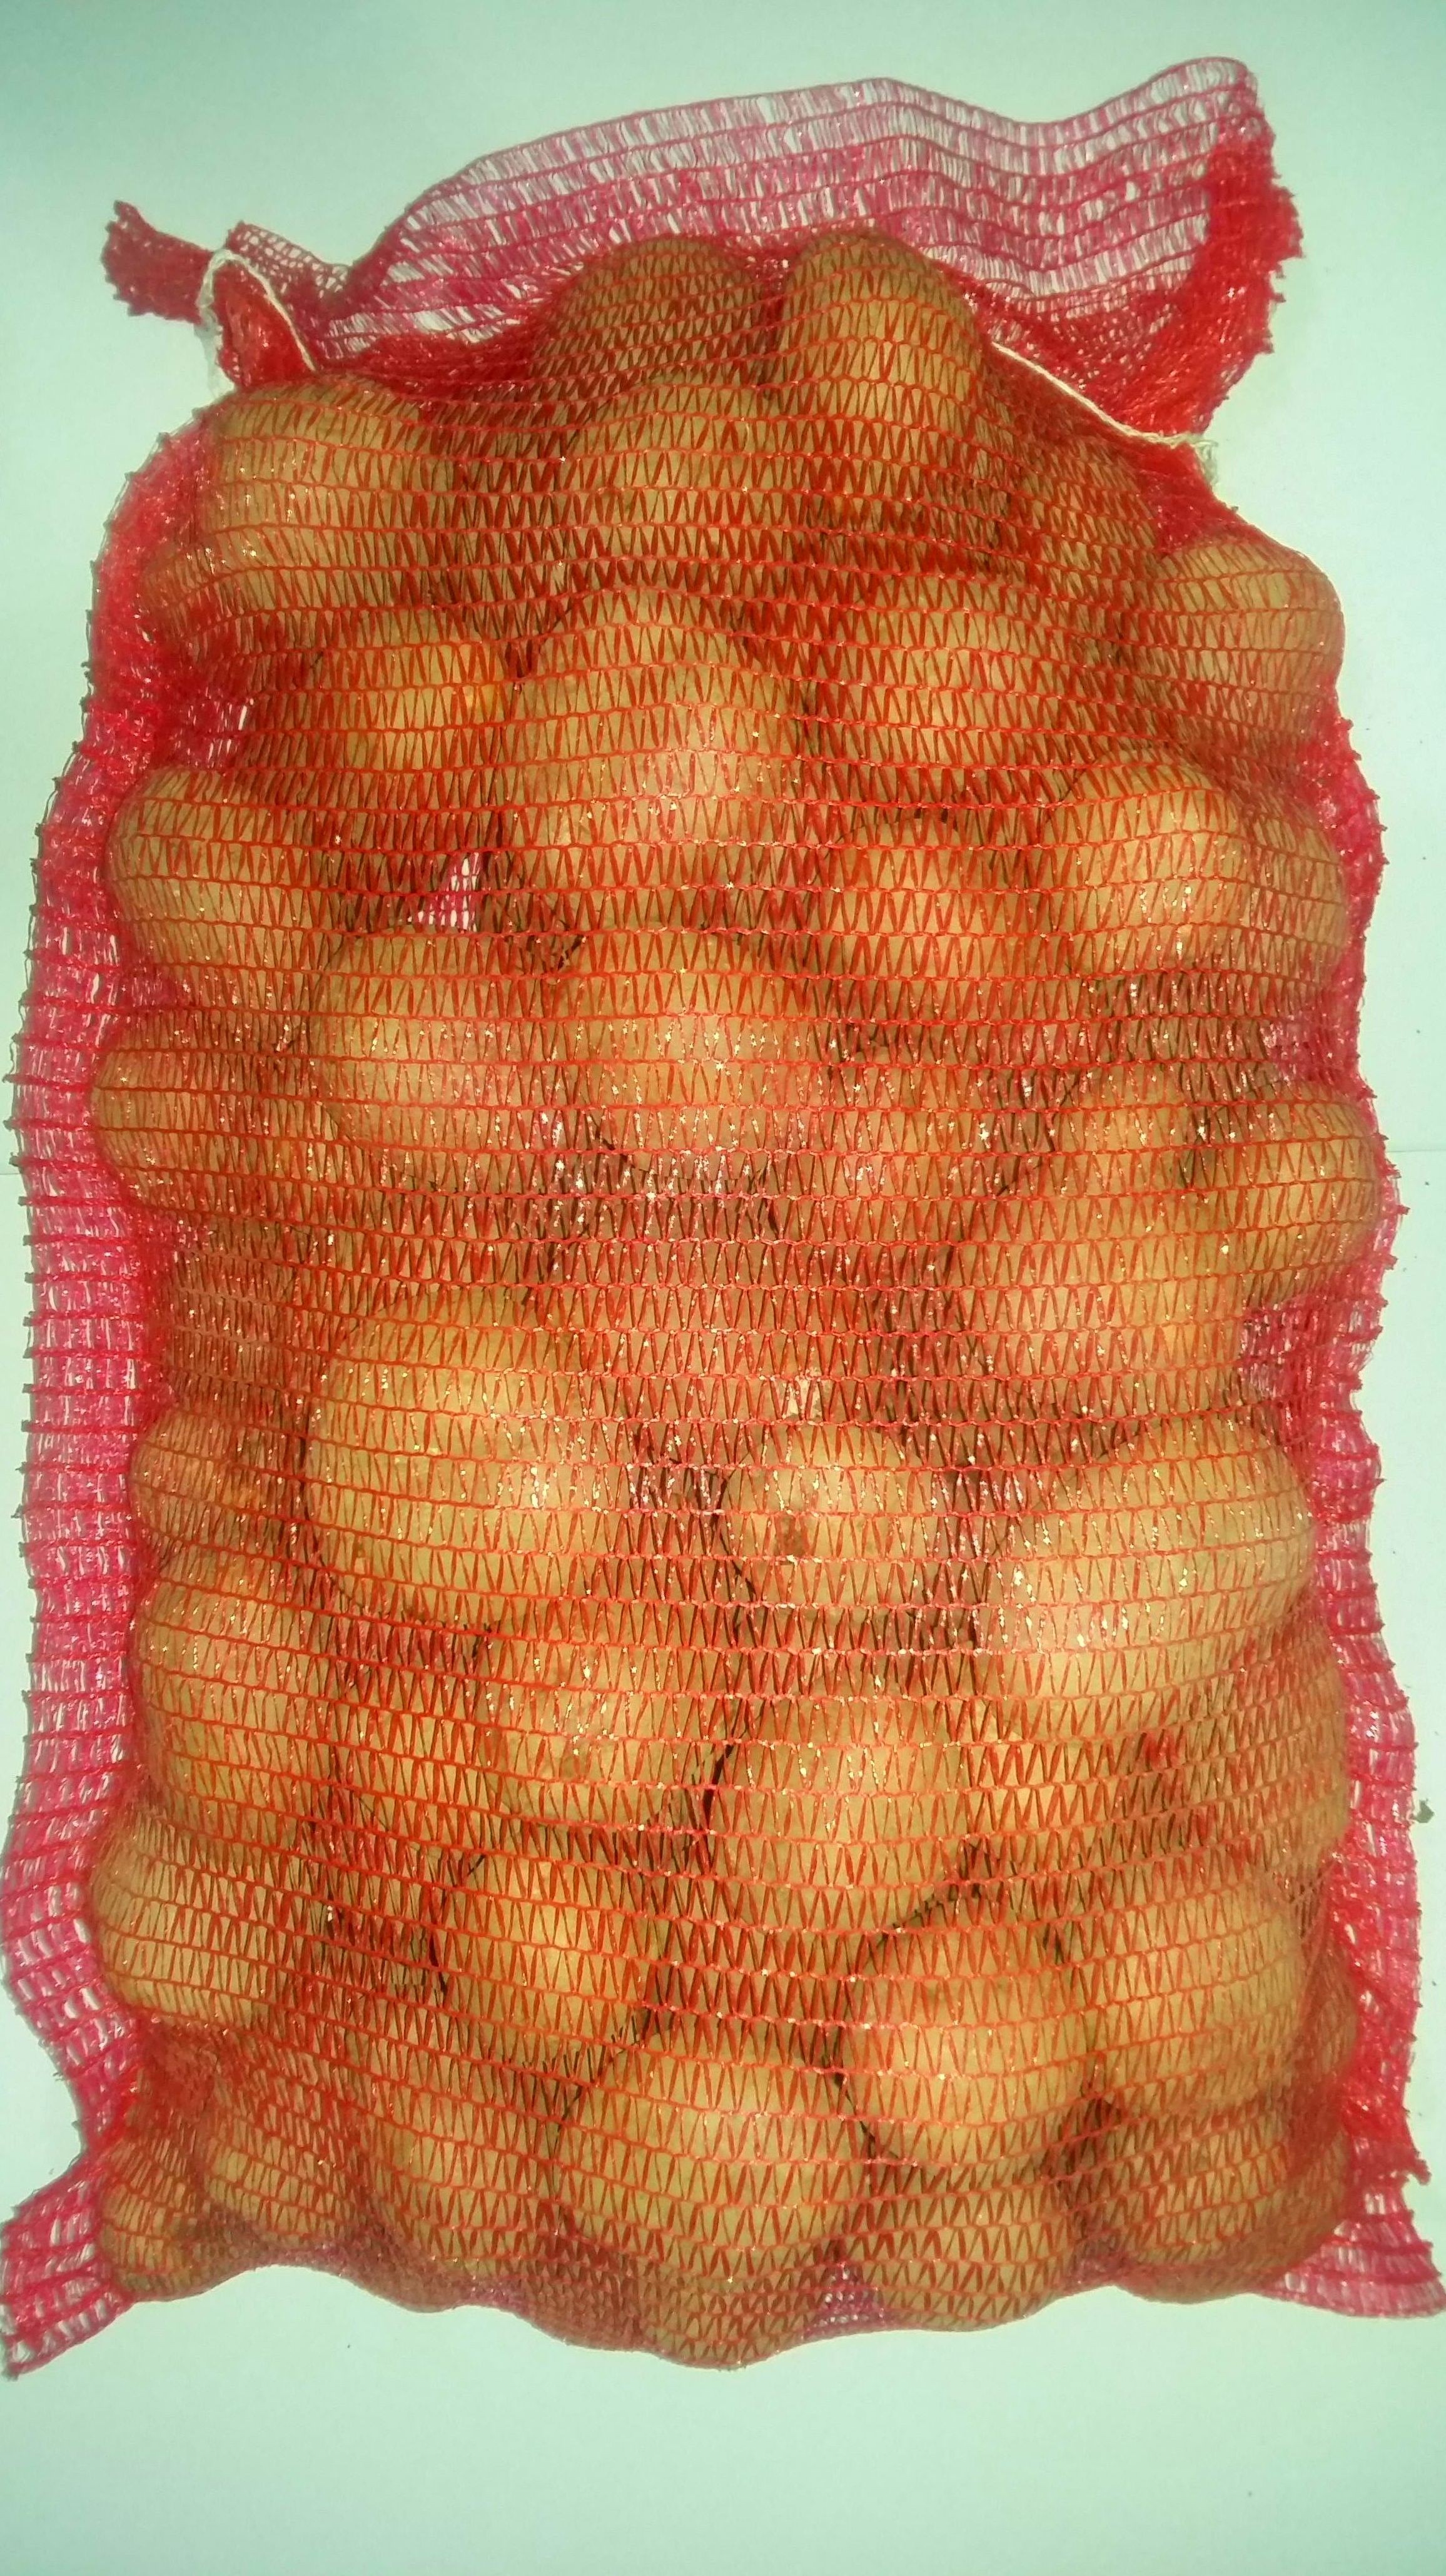 SANTAMARIA RED: Productos de Patatas Santamaría 